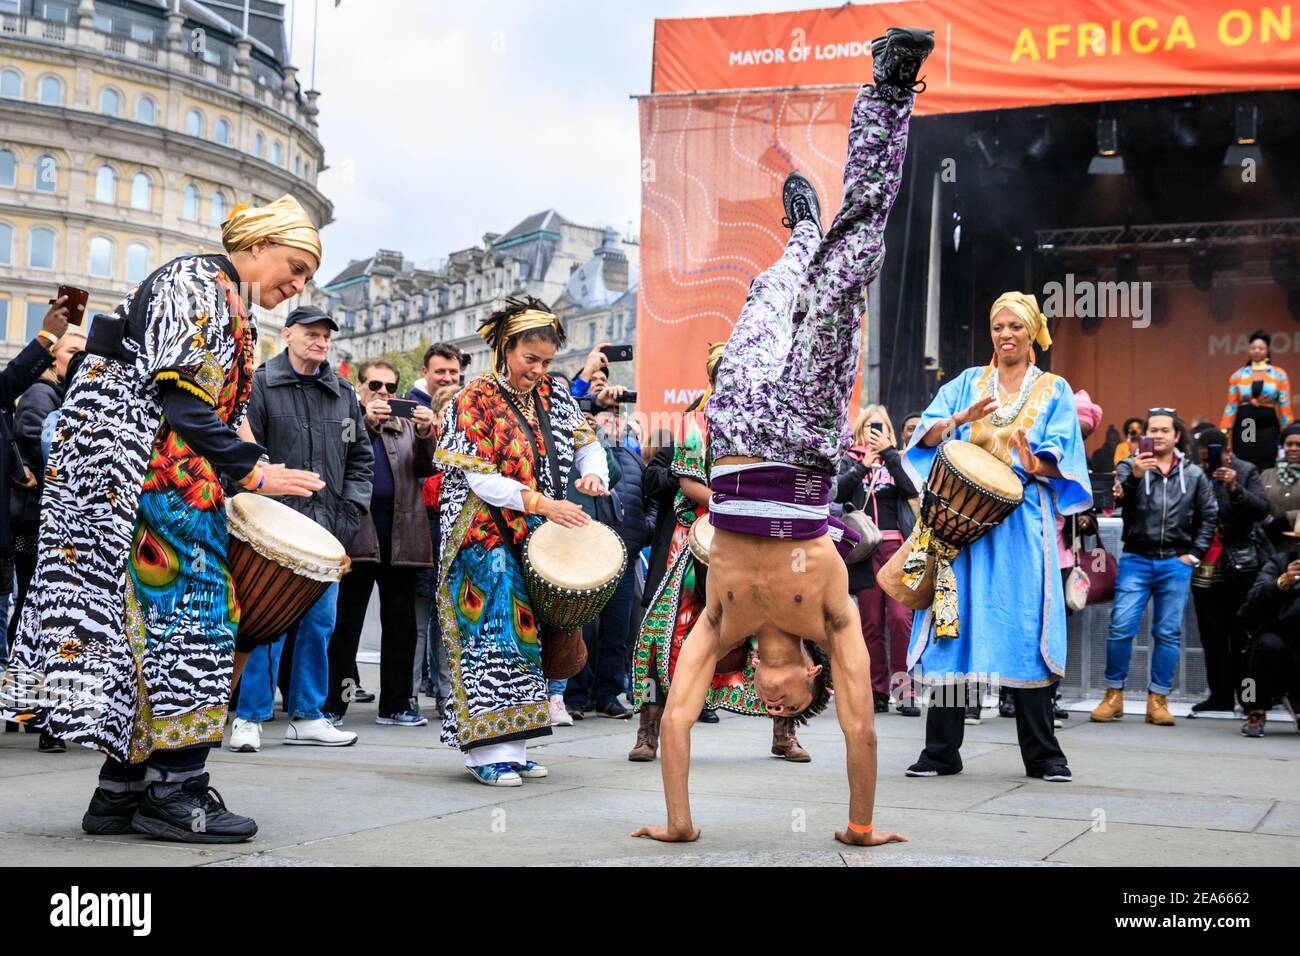 Spectacle africain avec danse acrobatique de rue, tambour et groupe de danse  en costumes colorés à 'Africa on the Square', Trafalgar Square, Londres  Photo Stock - Alamy